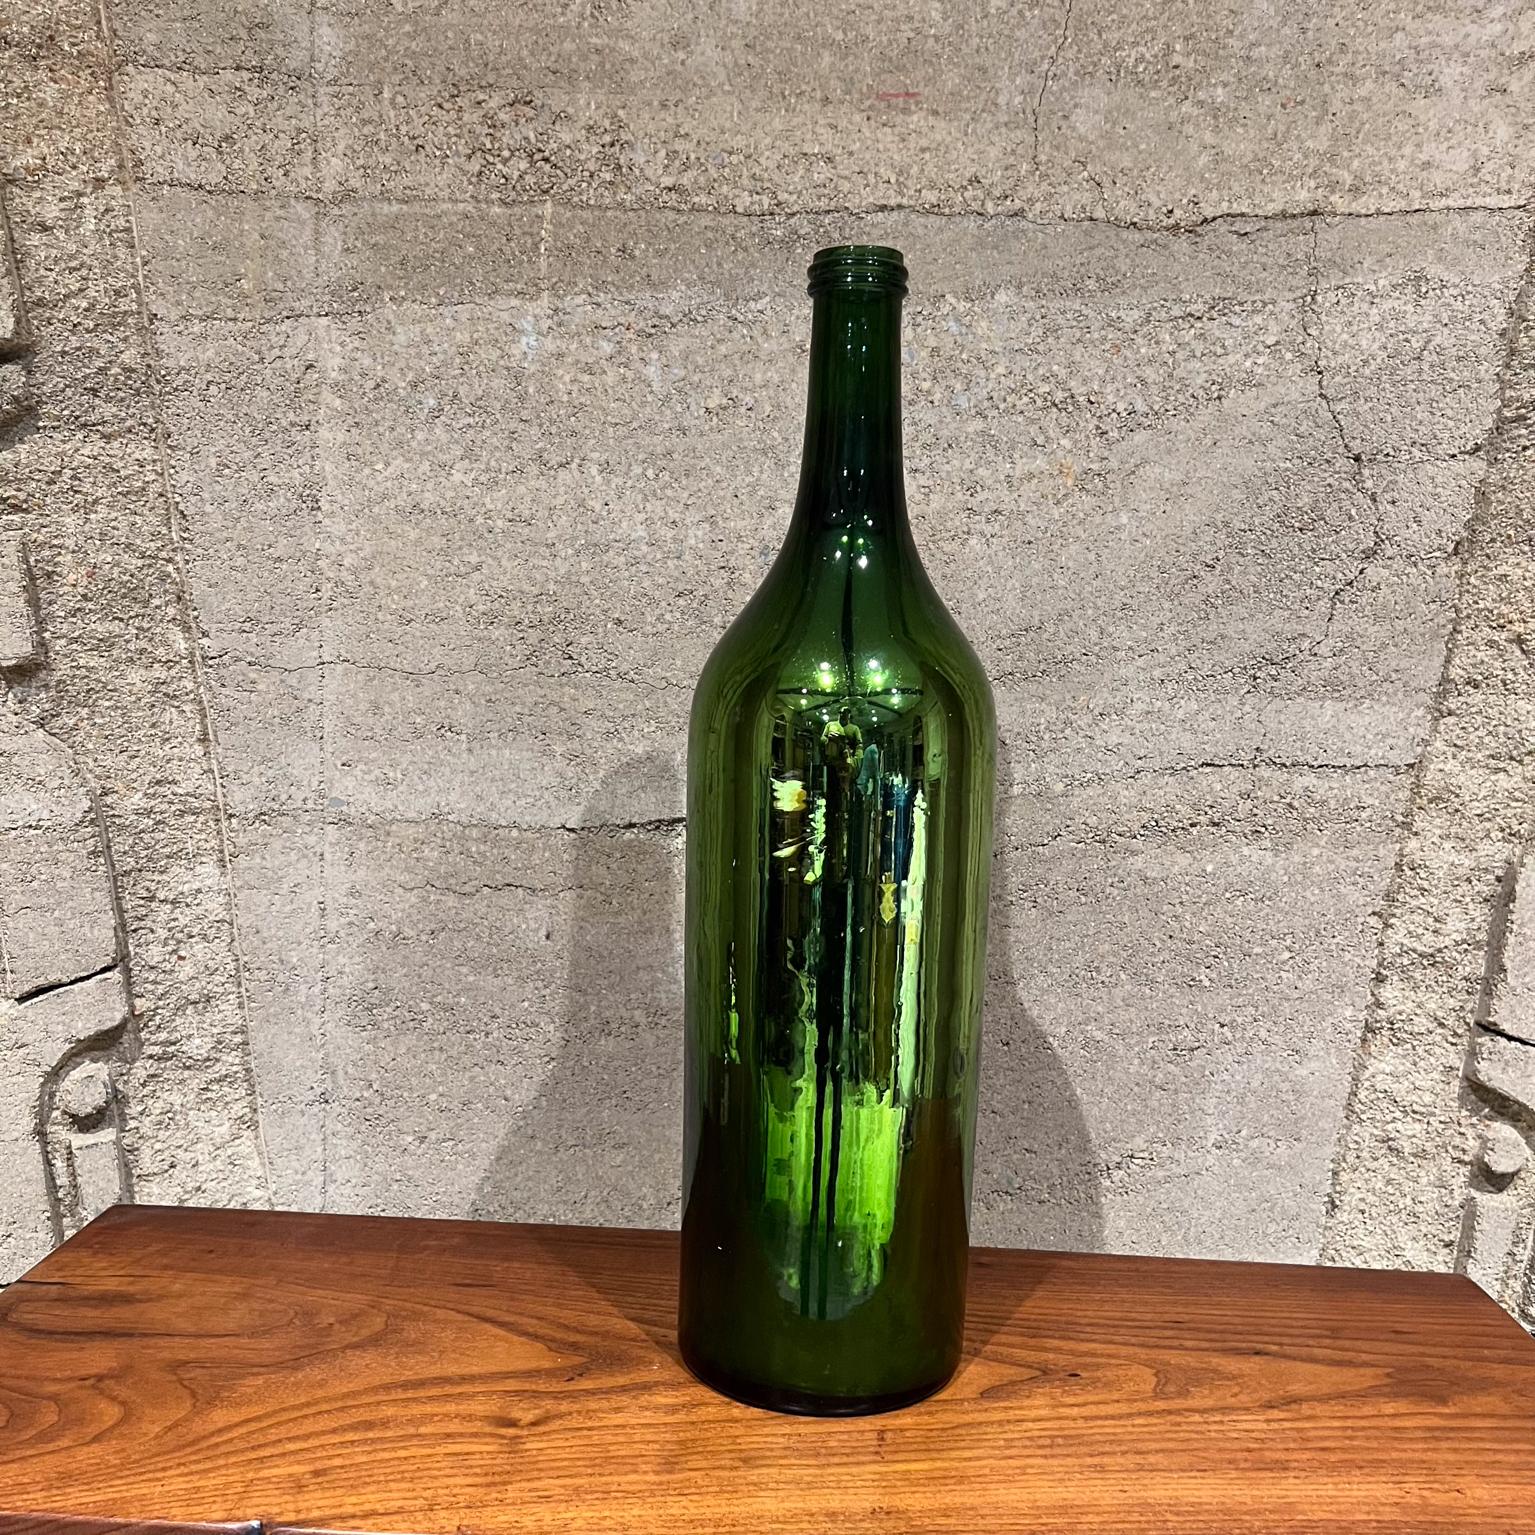 
Vintage Grün Quecksilber Glasflasche
21,25 h x 5,63 Durchmesser
Gebrauchter unrestaurierter Vintage-Zustand
Kein Label
Siehe die beigefügten Bilder.